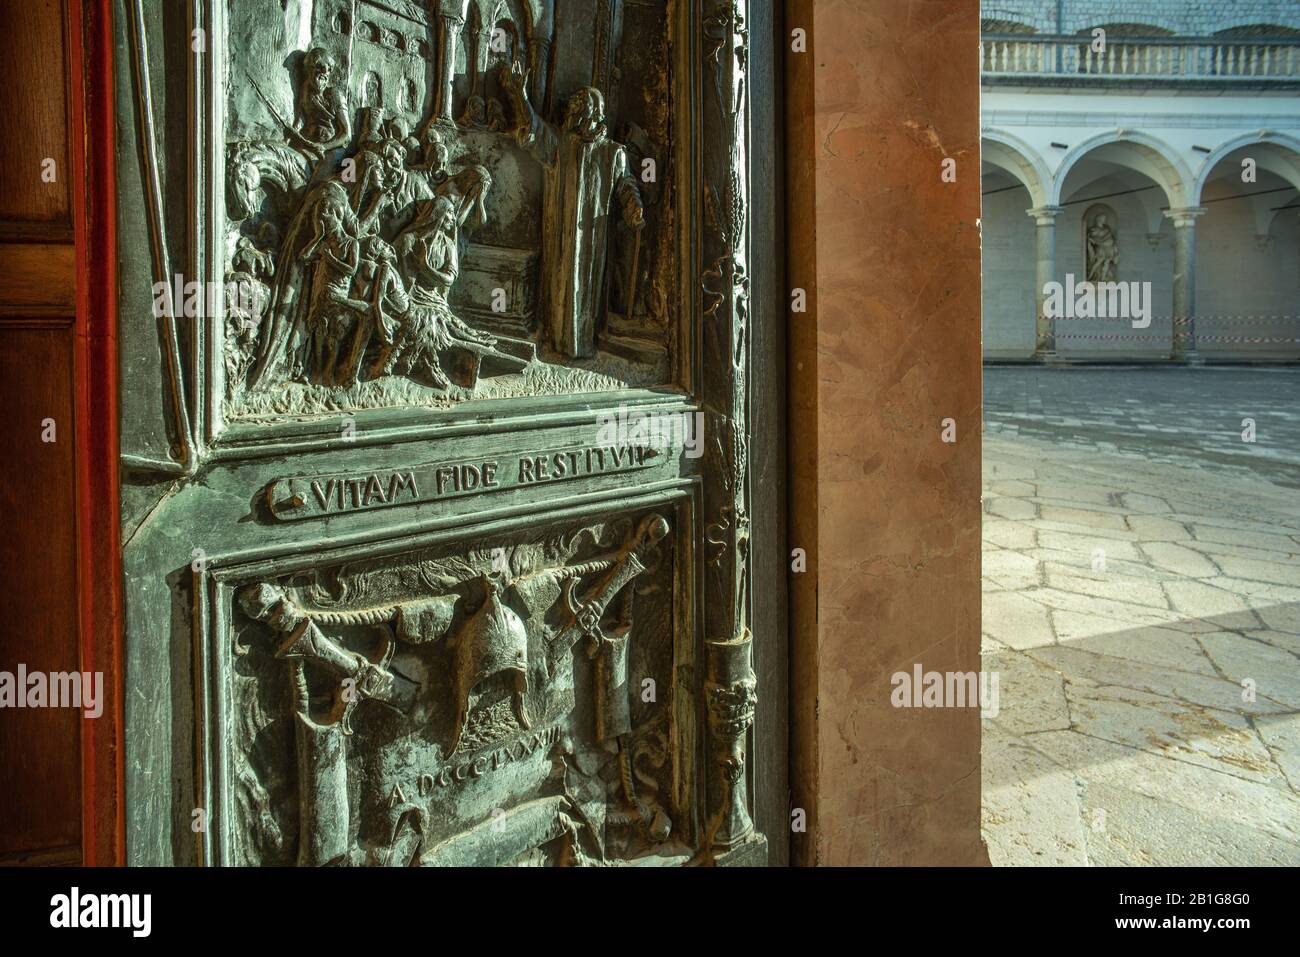 Basilika von Montecassino, Detail der Flachreliefs des Portals durch ein grasendes Licht beleuchtet. Cassino, Provinz Frosinone, Latium, Italien, Europ Stockfoto